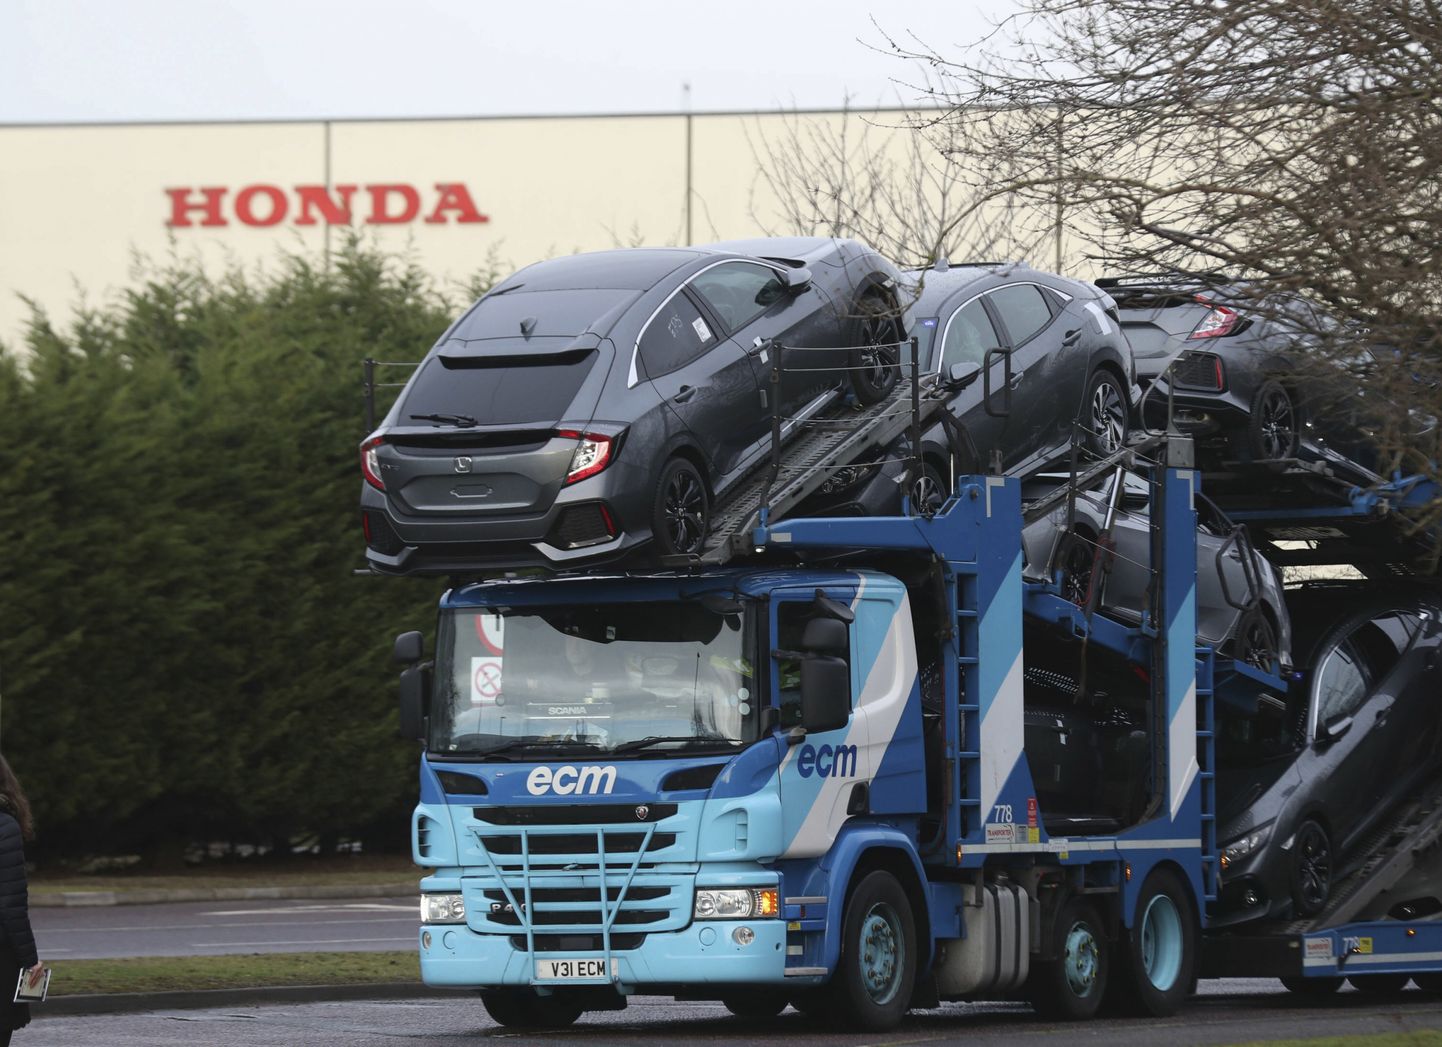 Jauni automobiļi pamet Honda rūpnīcu Svindonā